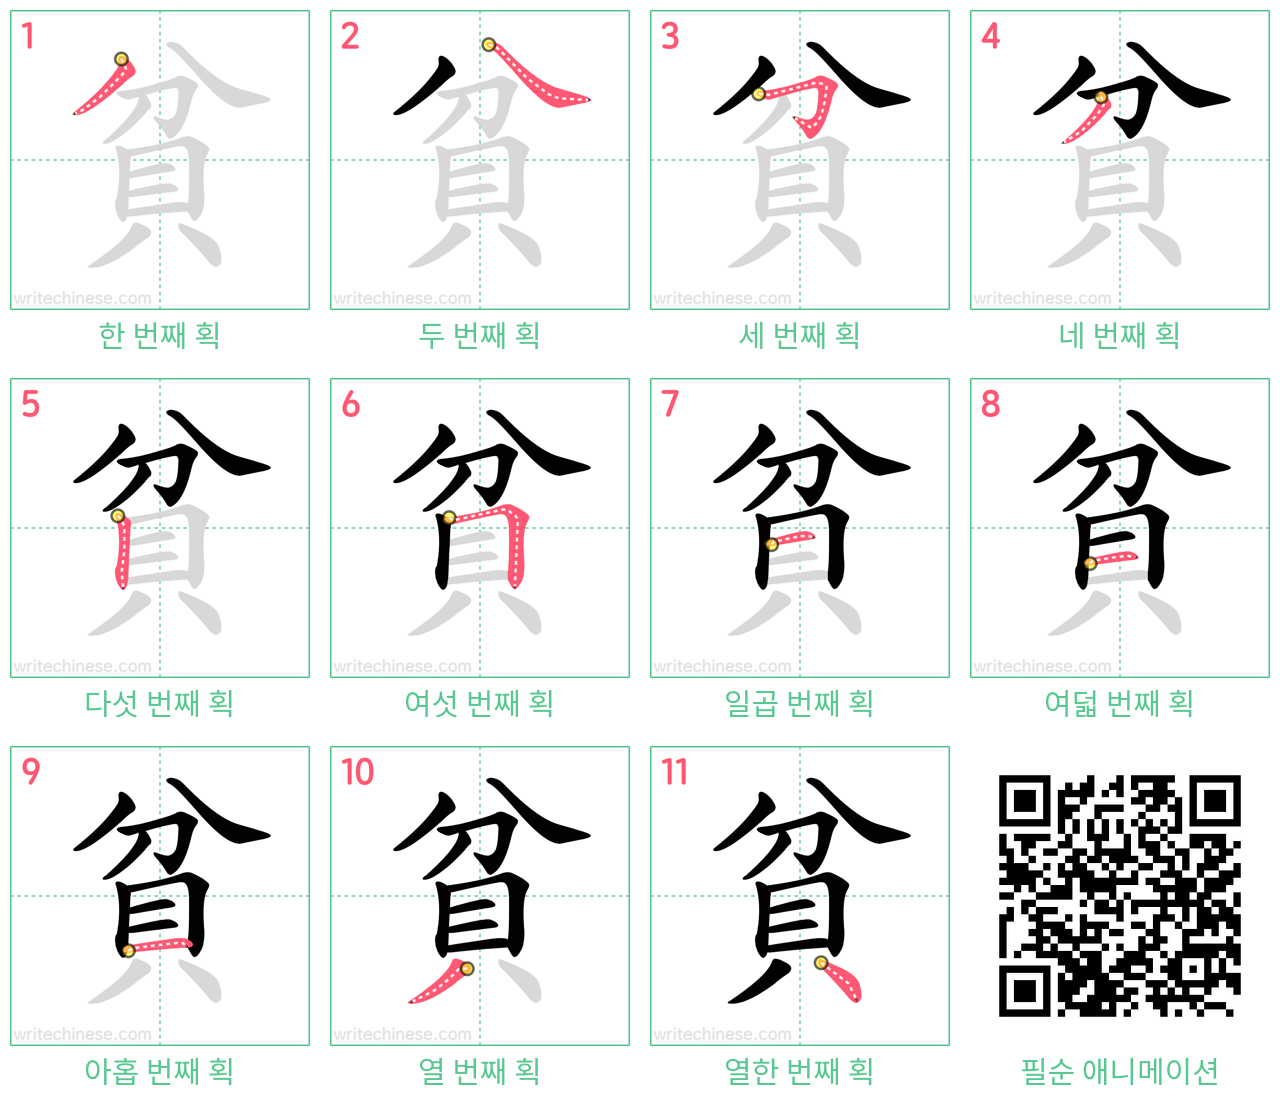 貧 step-by-step stroke order diagrams